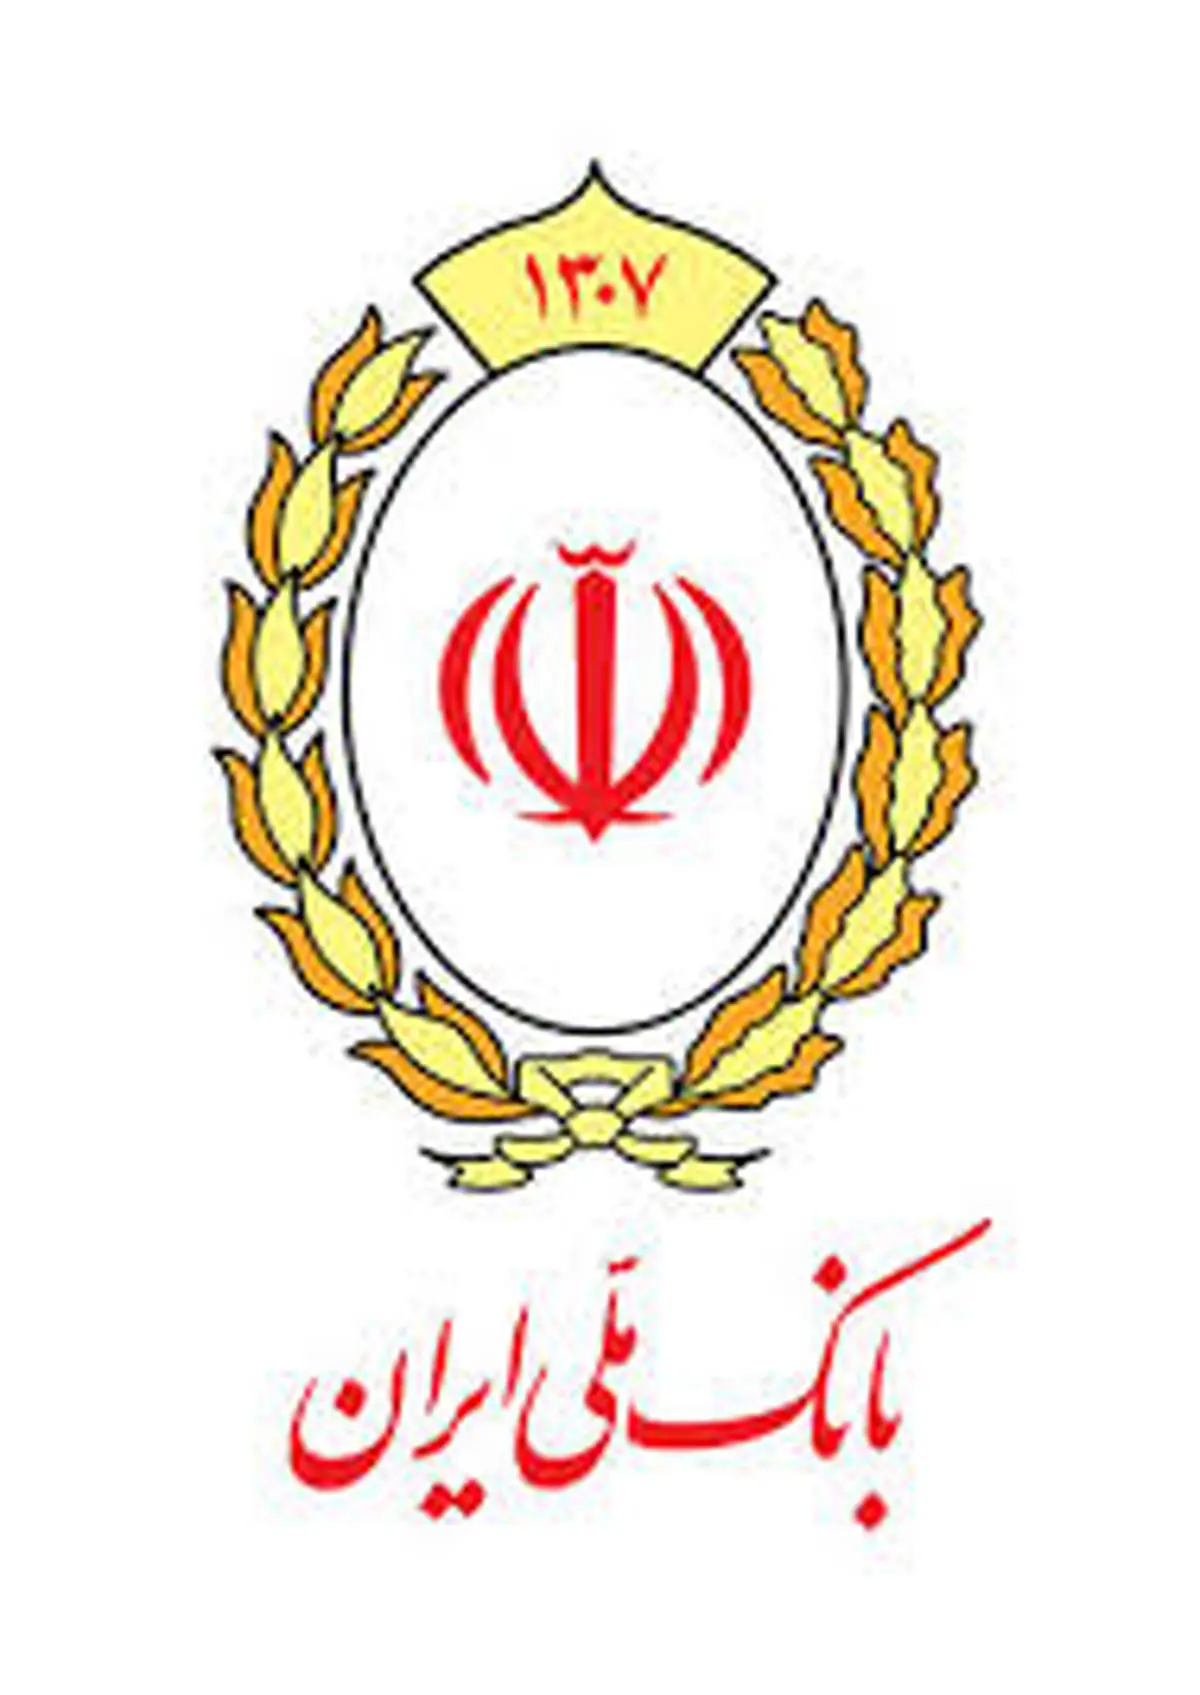 رفع احتیاجات ضروری با وام قرض الحسنه بانک ملی ایران

